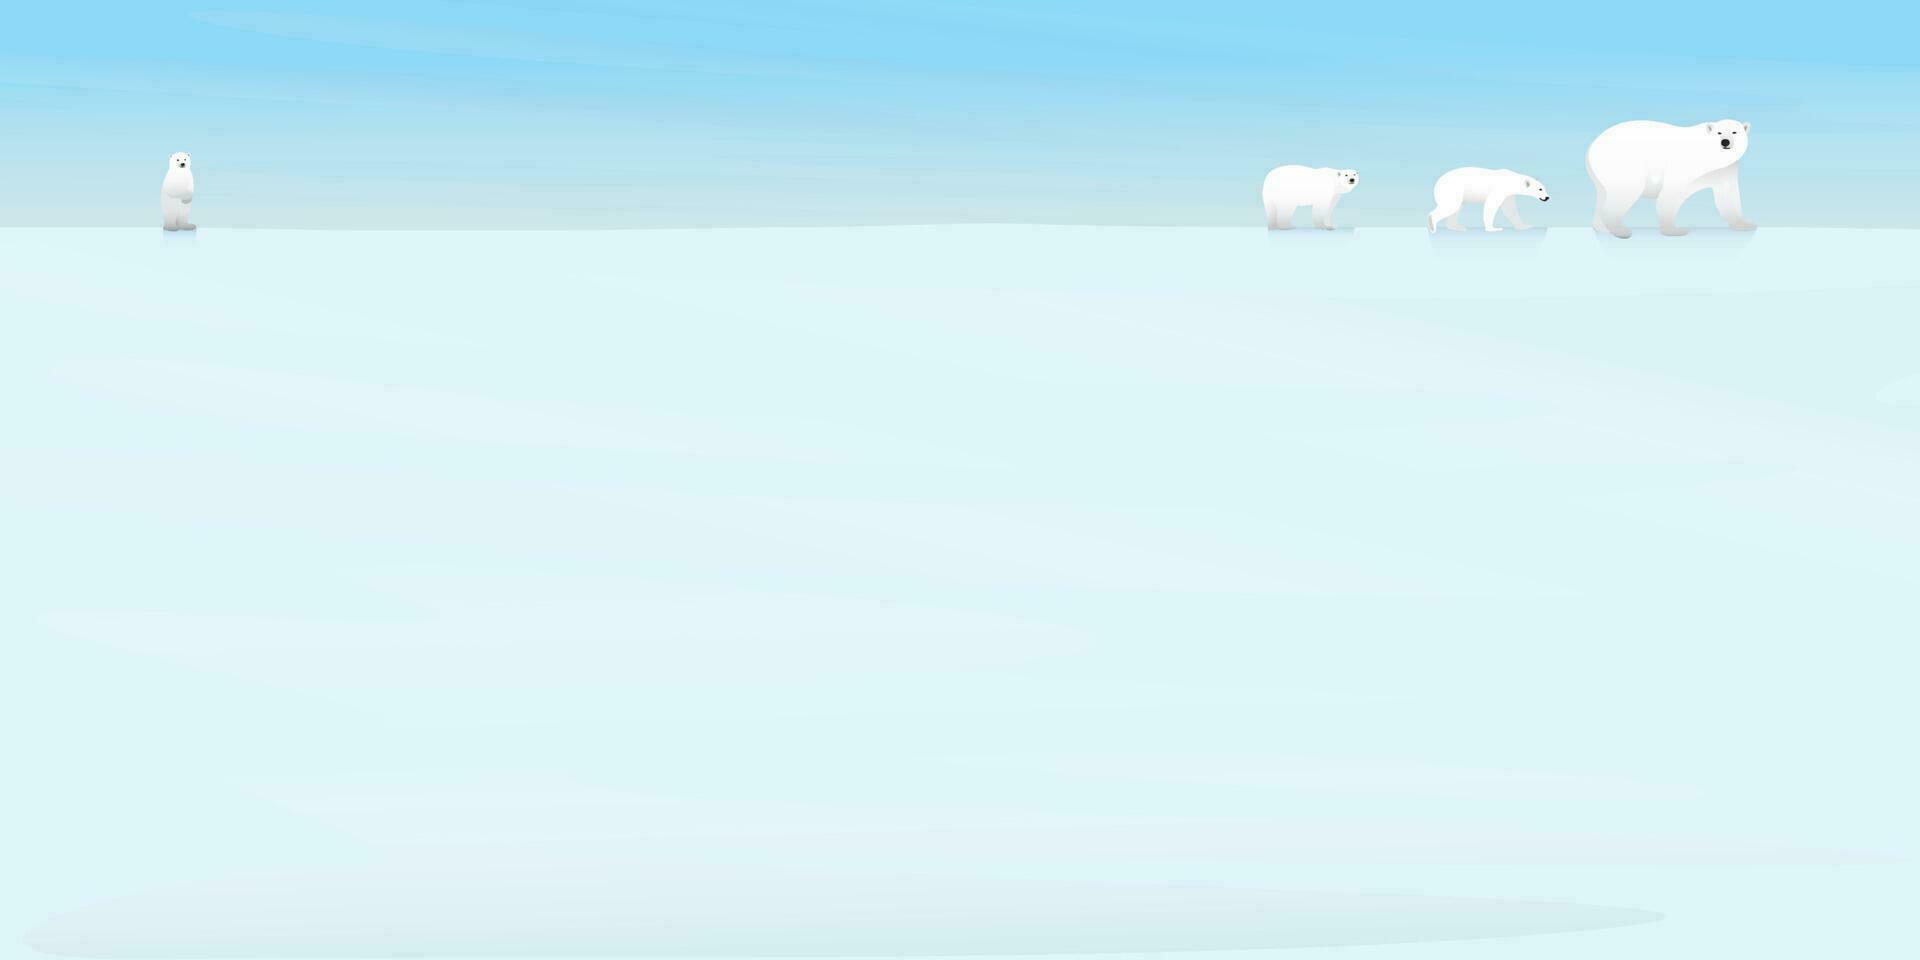 Polar- Bären Familie Gehen auf Eis beim Norden Pole eben Design Vektor Illustration. Schnee Landschaft Konzept mit leer Raum.